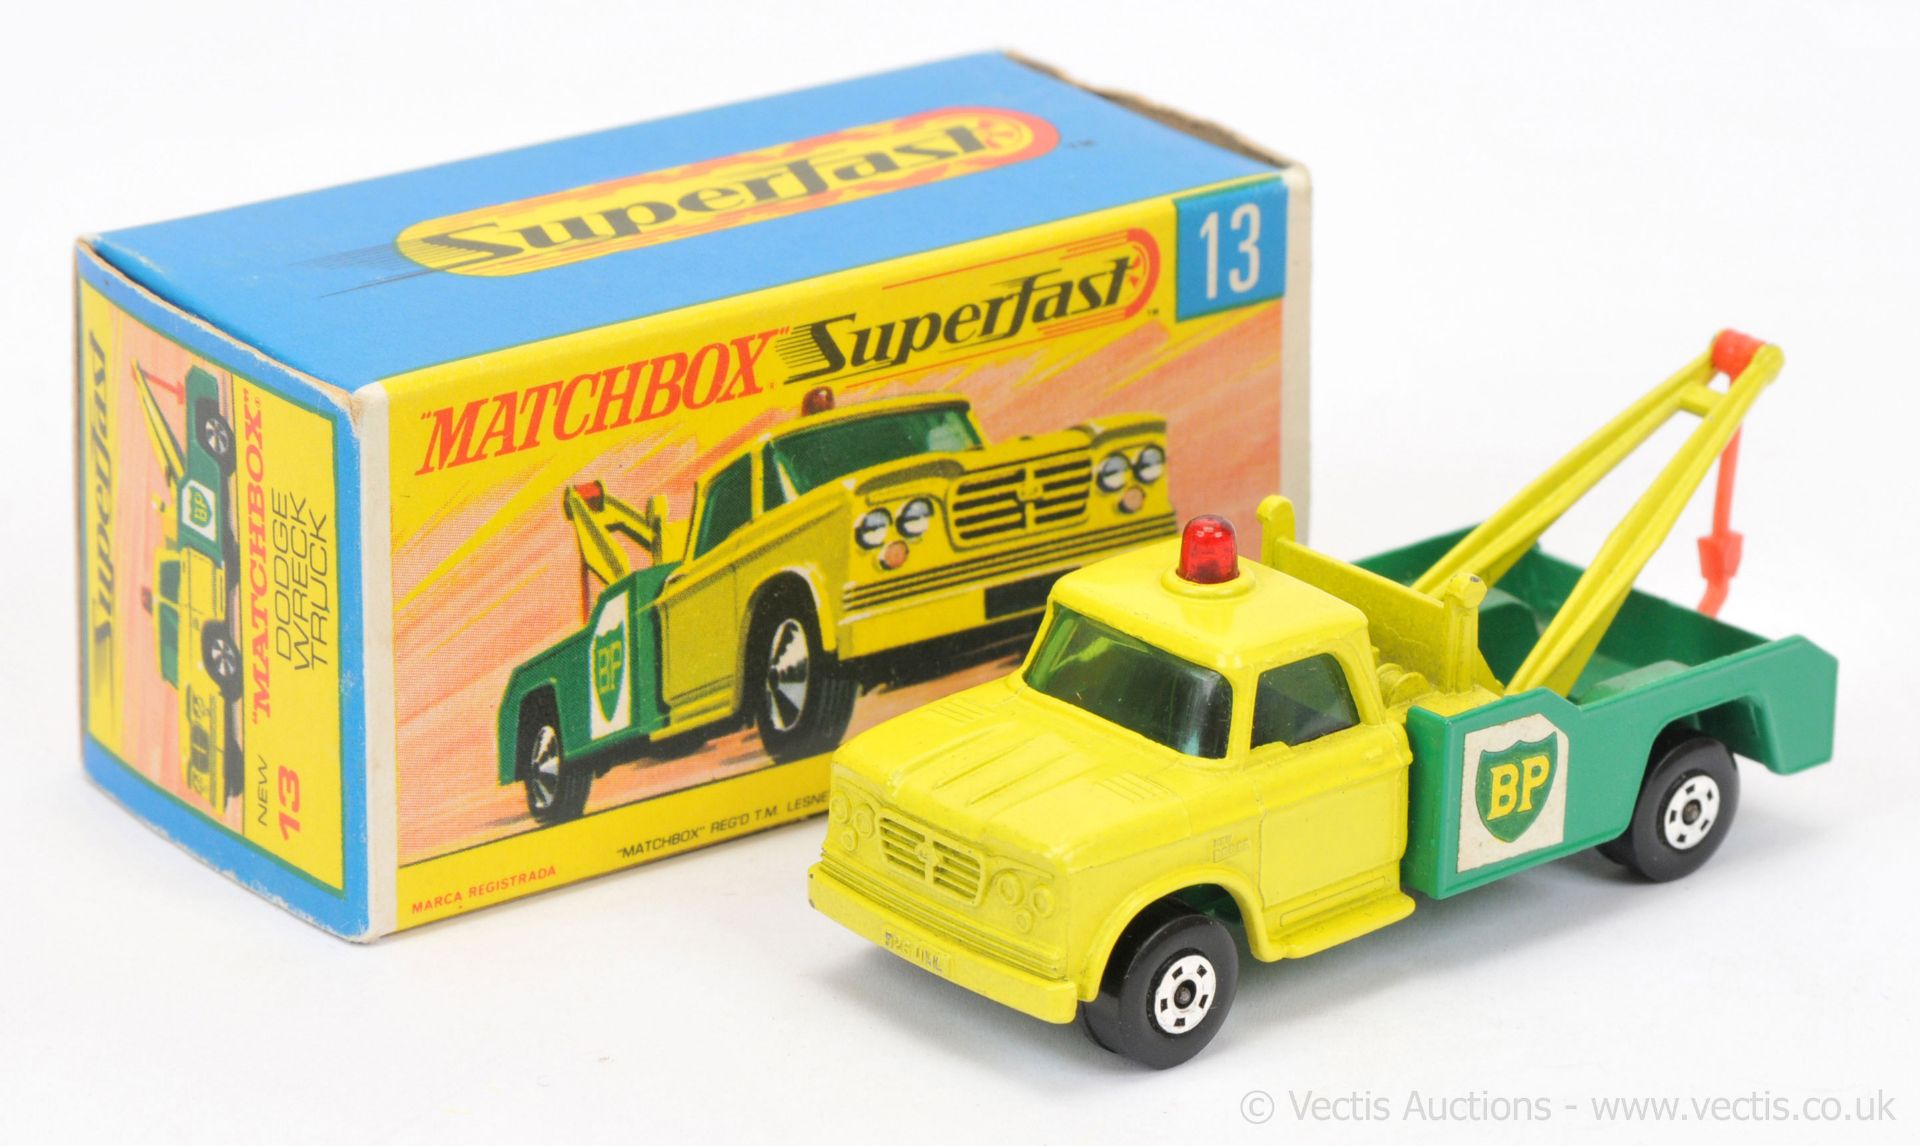 Matchbox Superfast 13a Dodge BP Wreck Truck